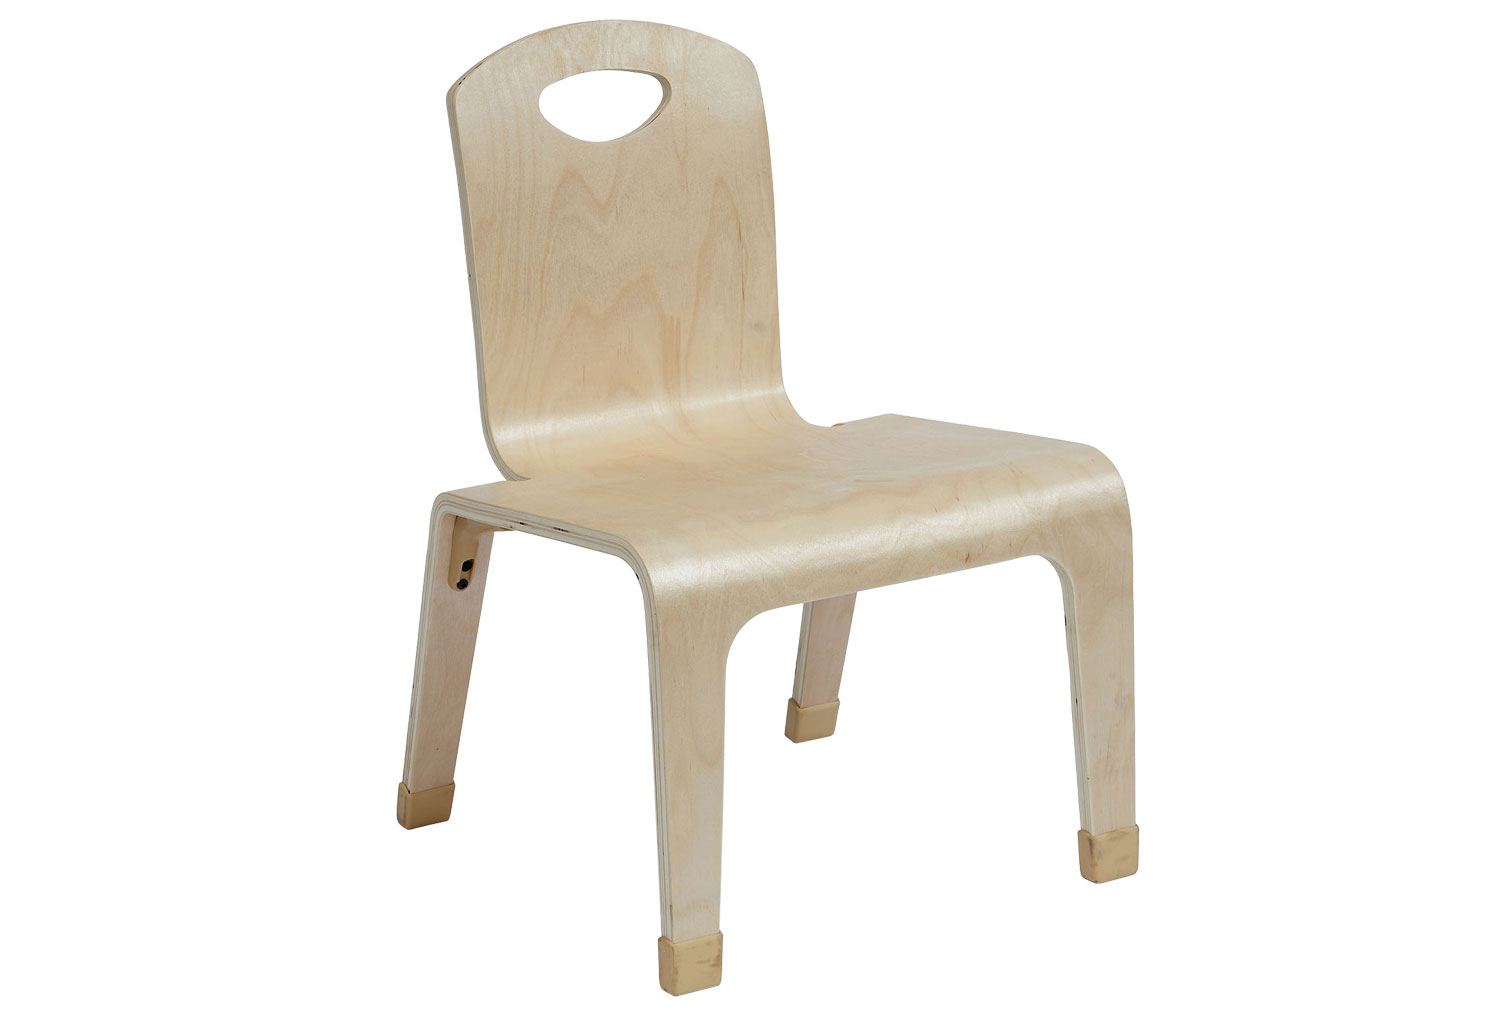 One Piece Wooden Teachers Low Chair, Beech